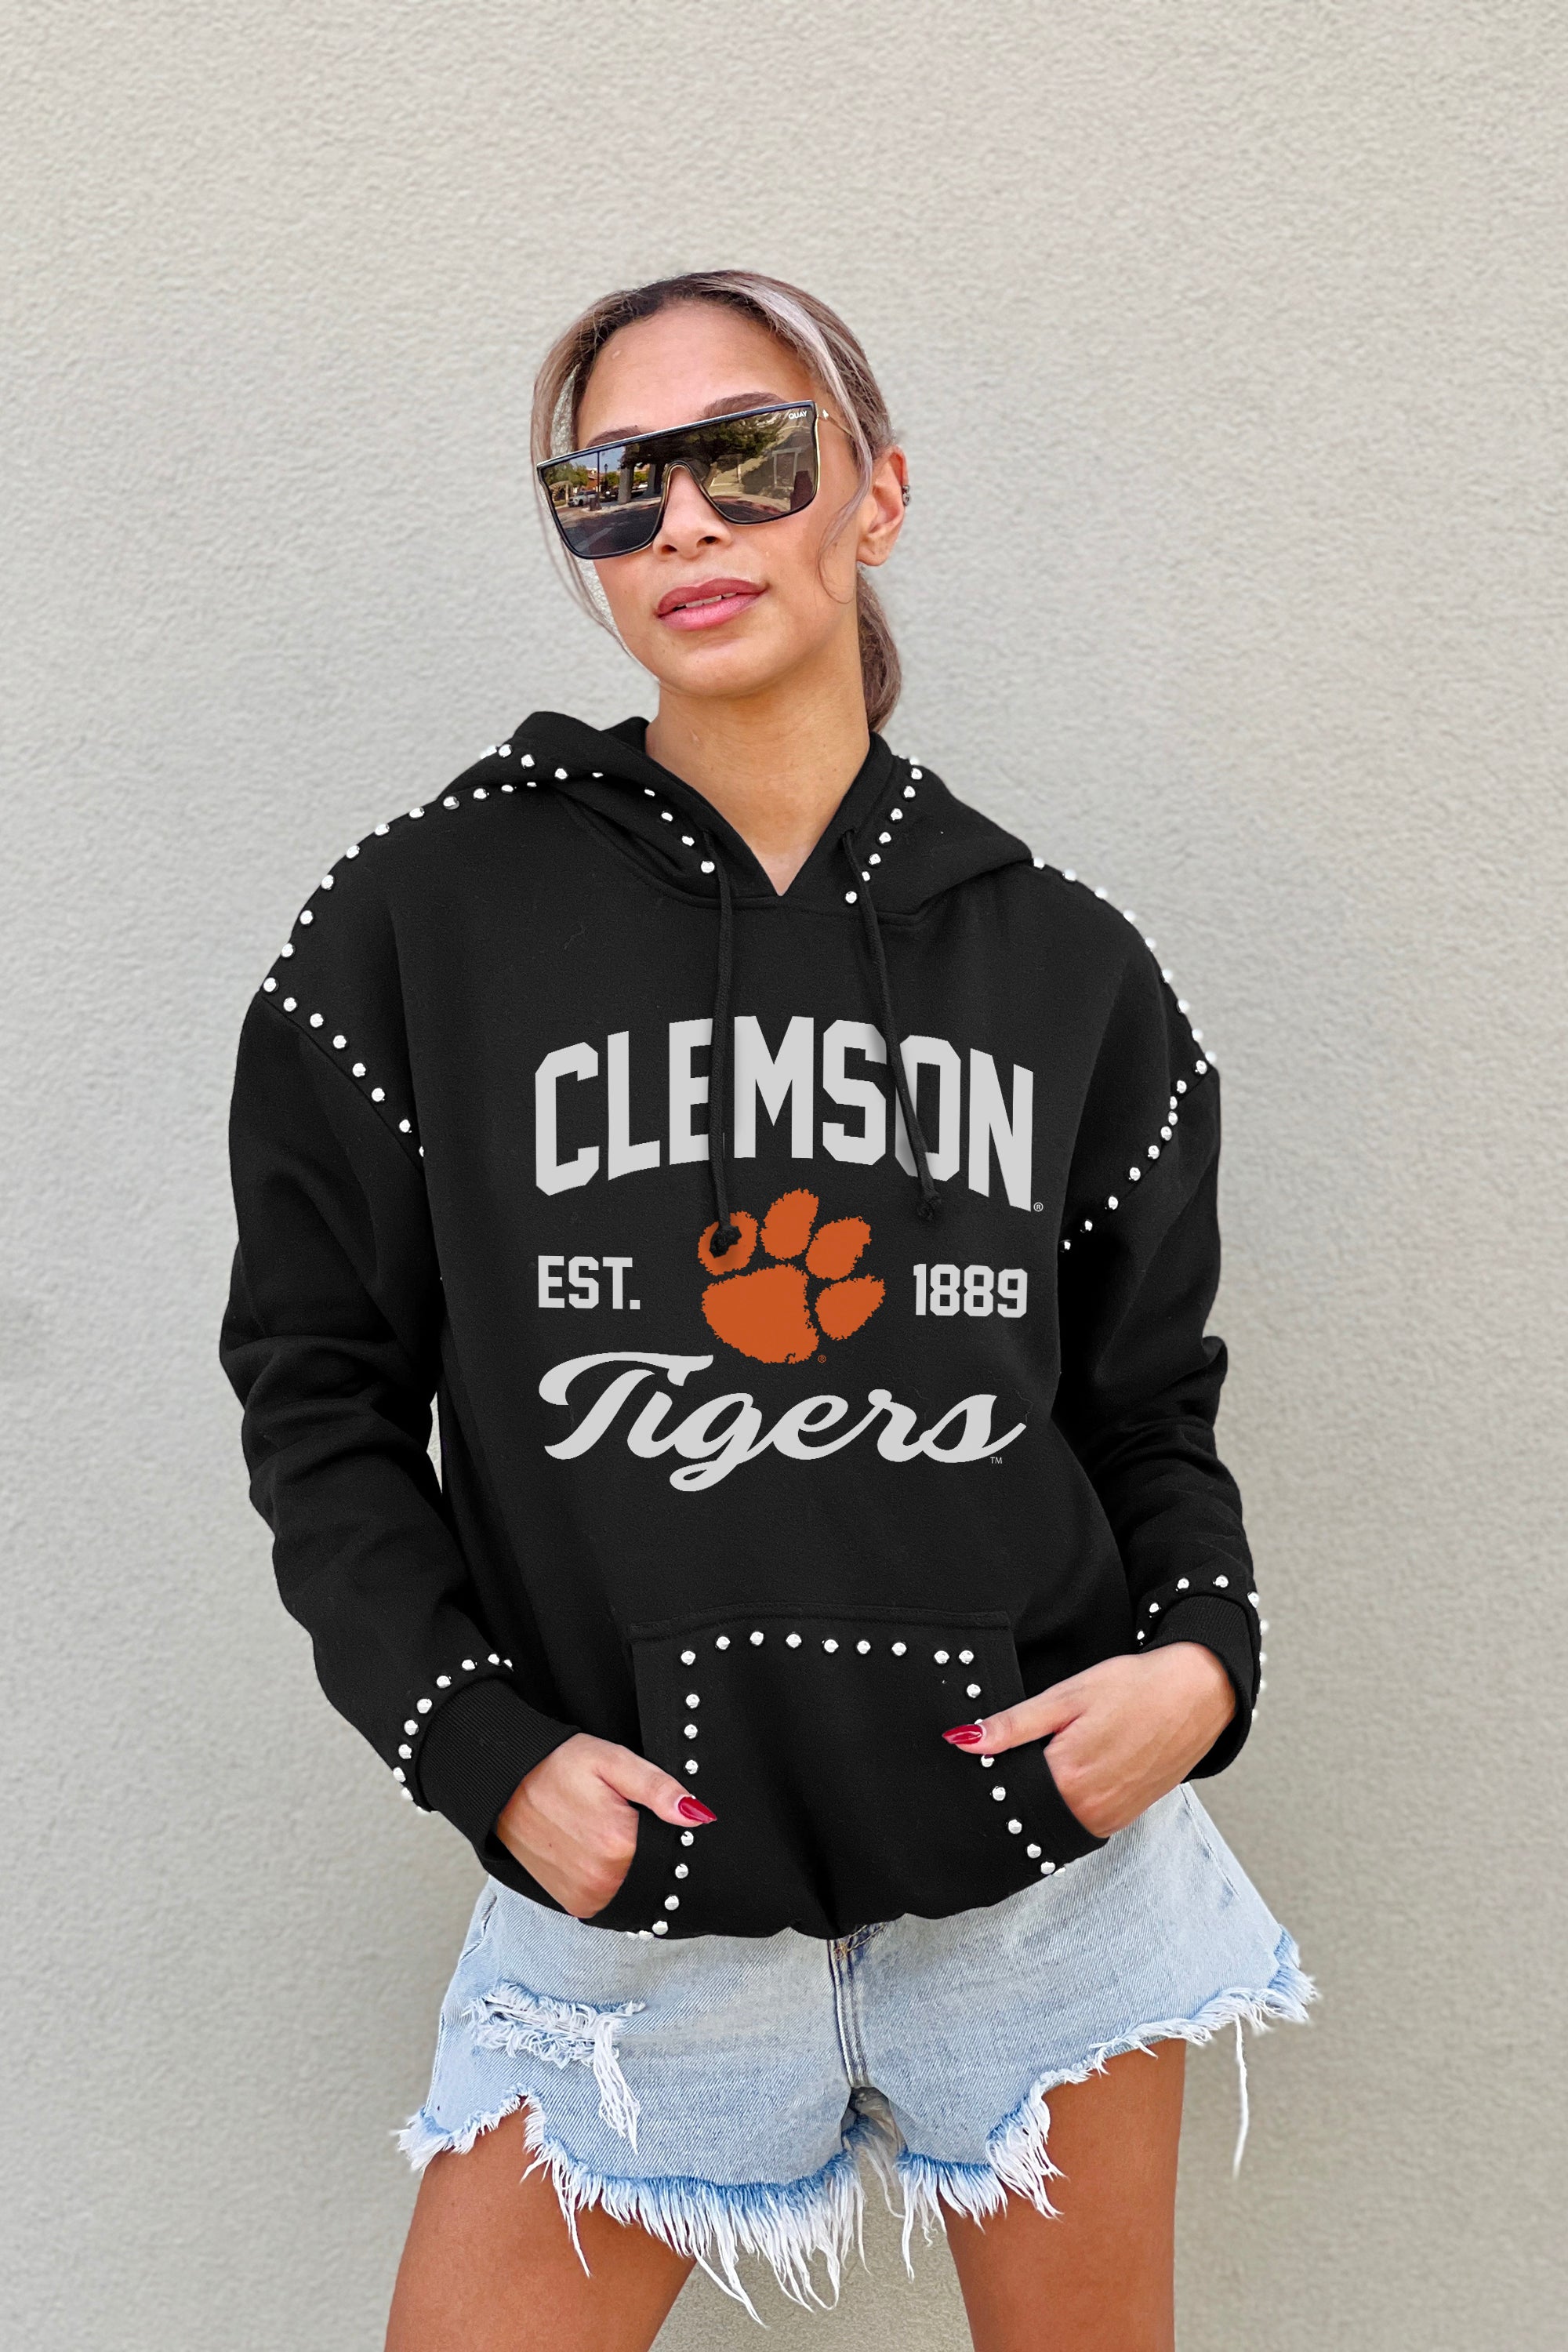 Clemson Hoodies, Clemson Tigers Sweatshirts, Fleece